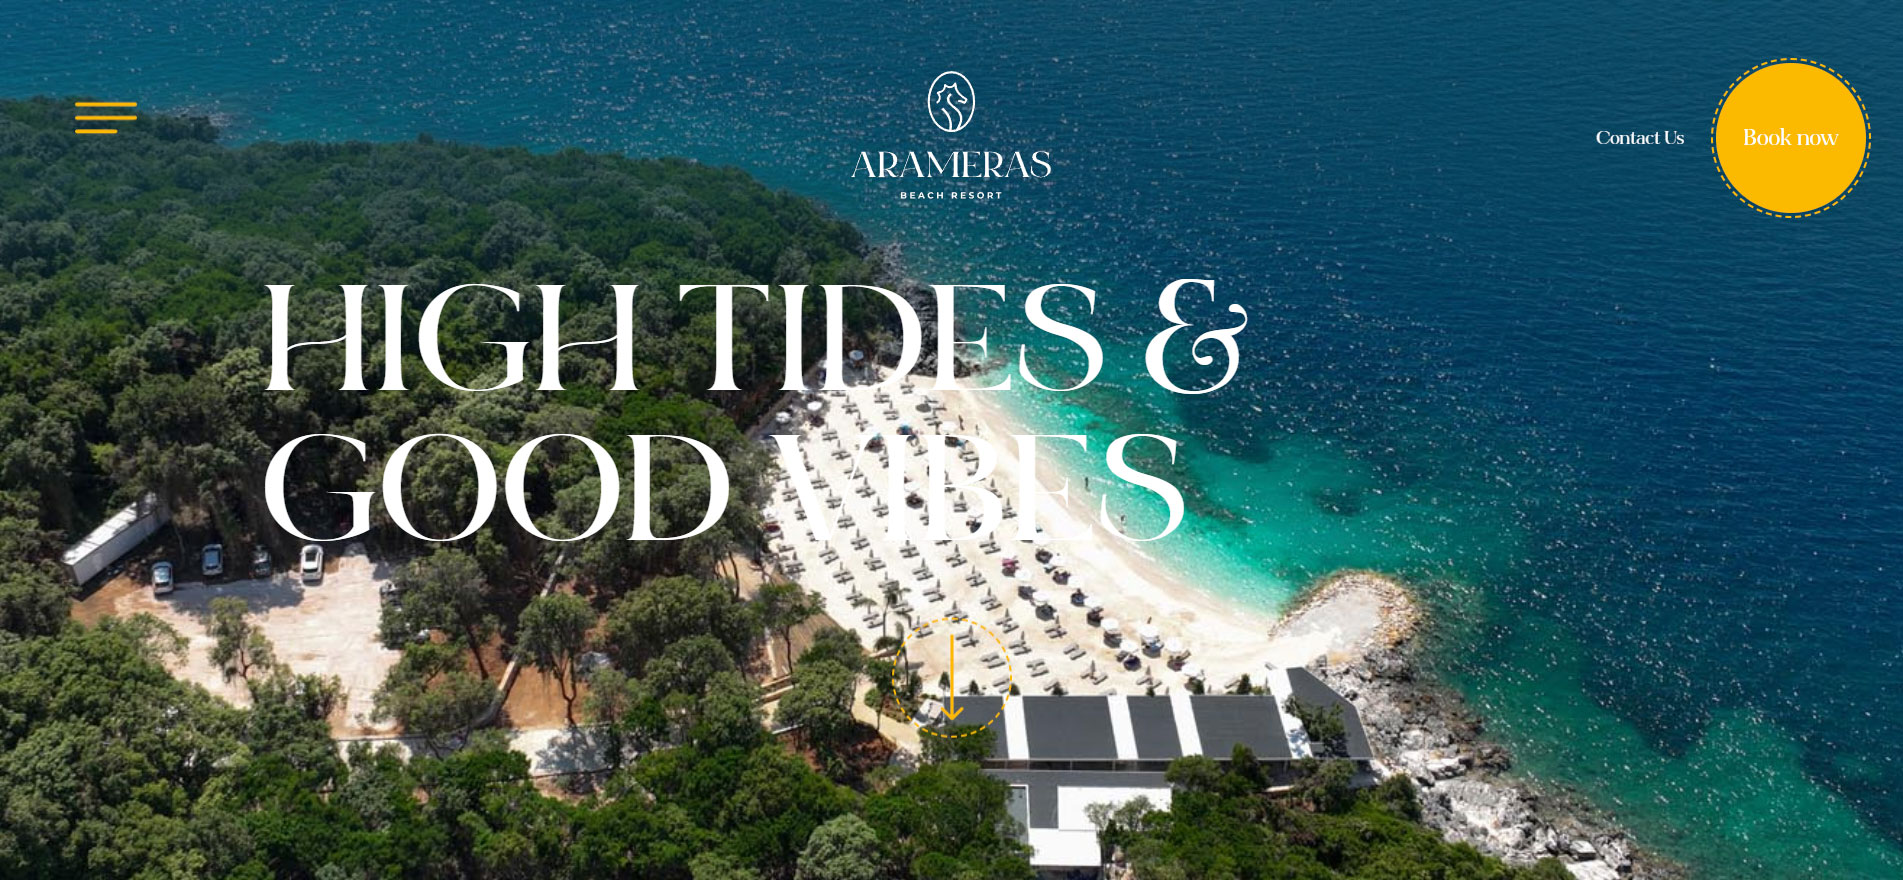 Arameras Beach Resort Homepage